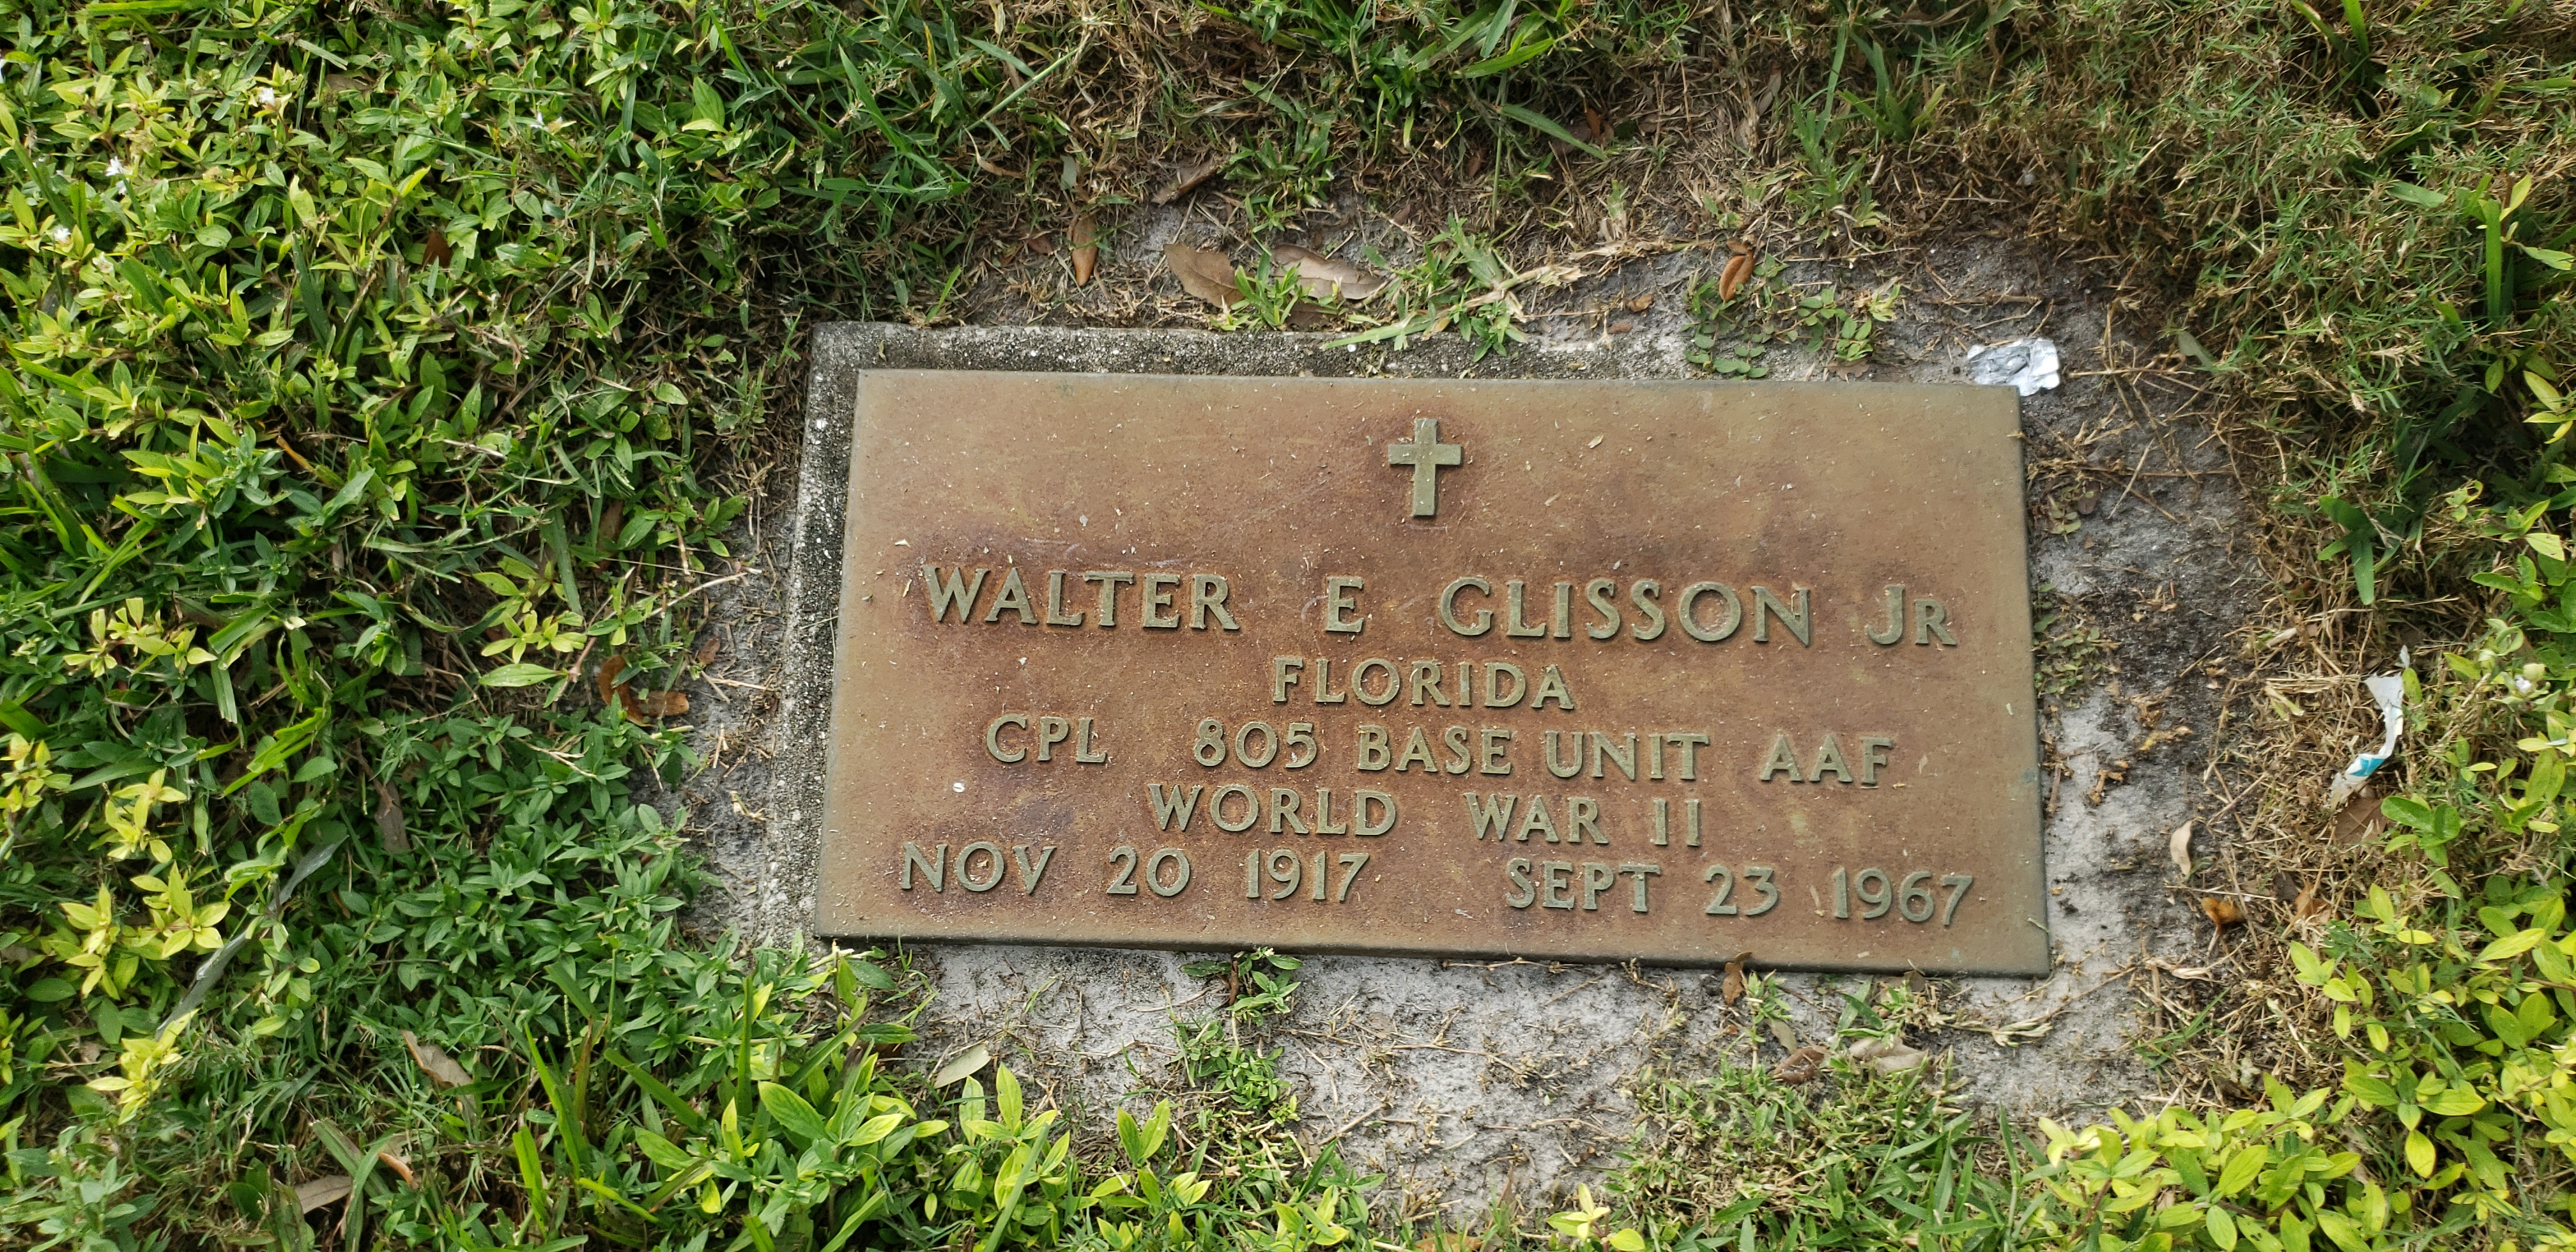 Walter E Glisson, Jr